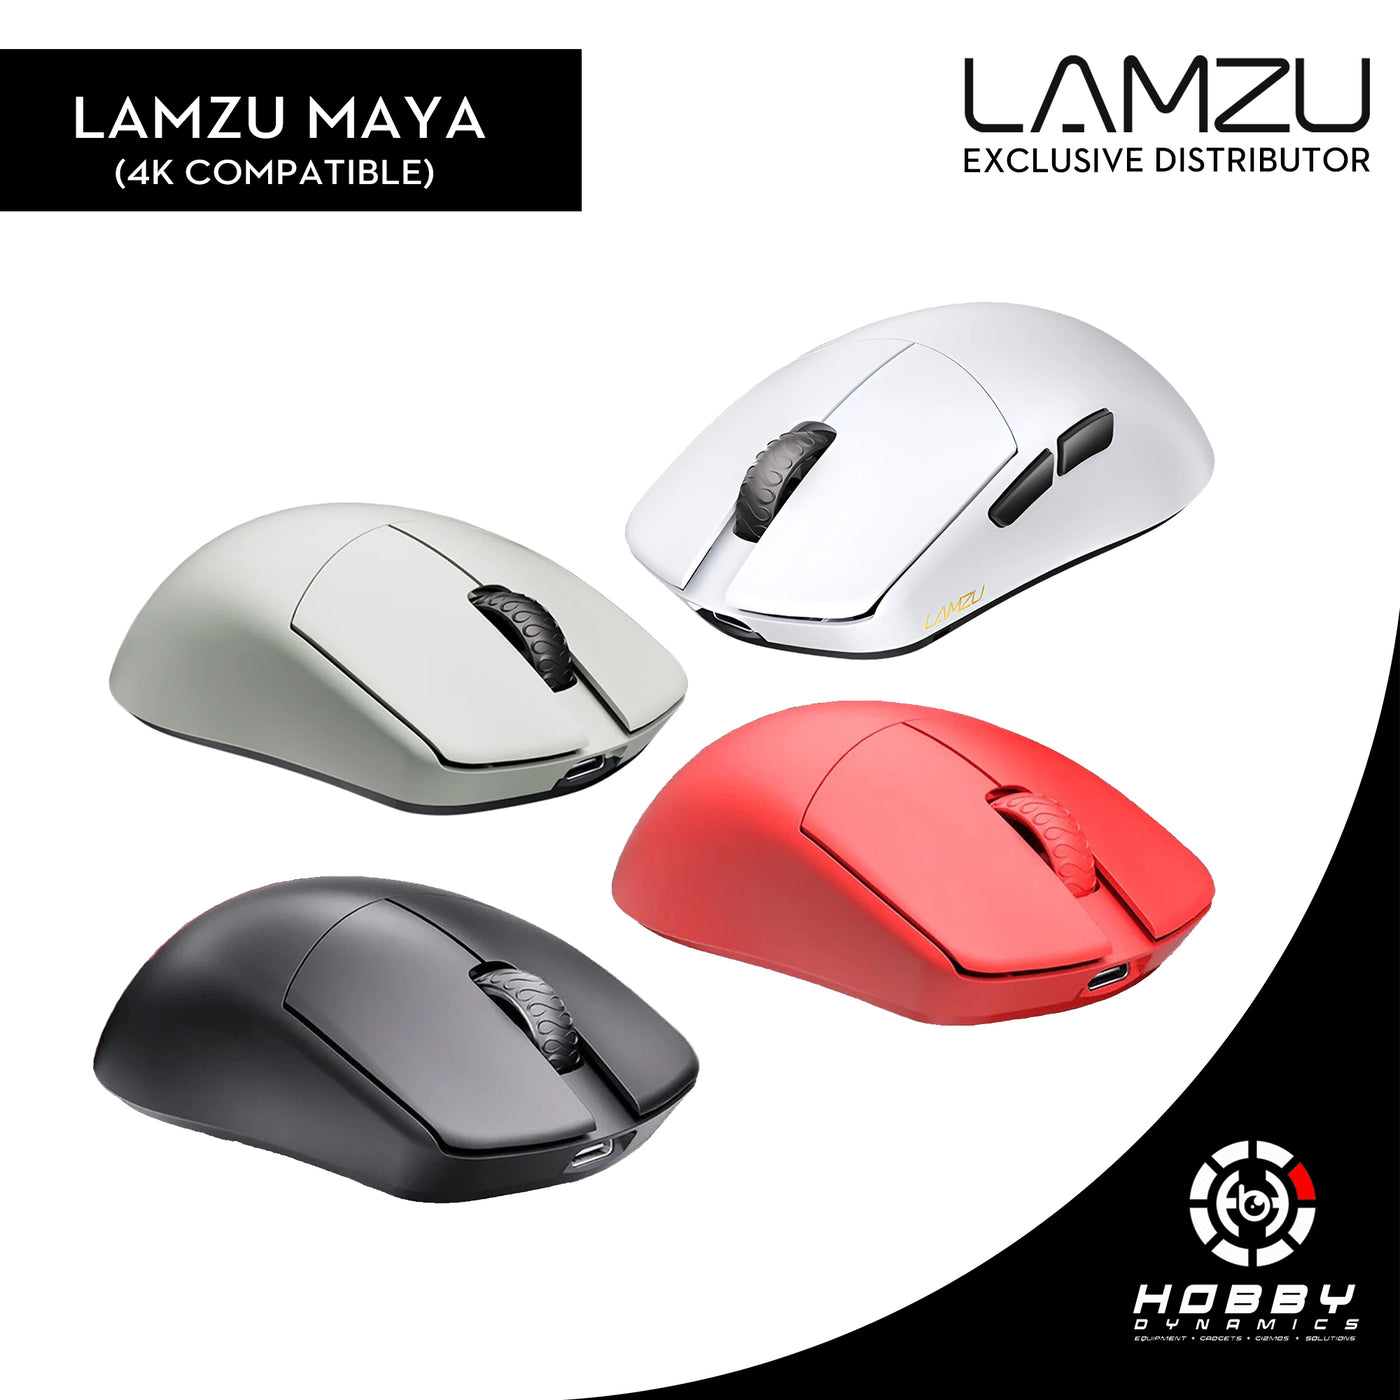 Lamzu Maya Wireless Gaming Mouse (4K Compatible)